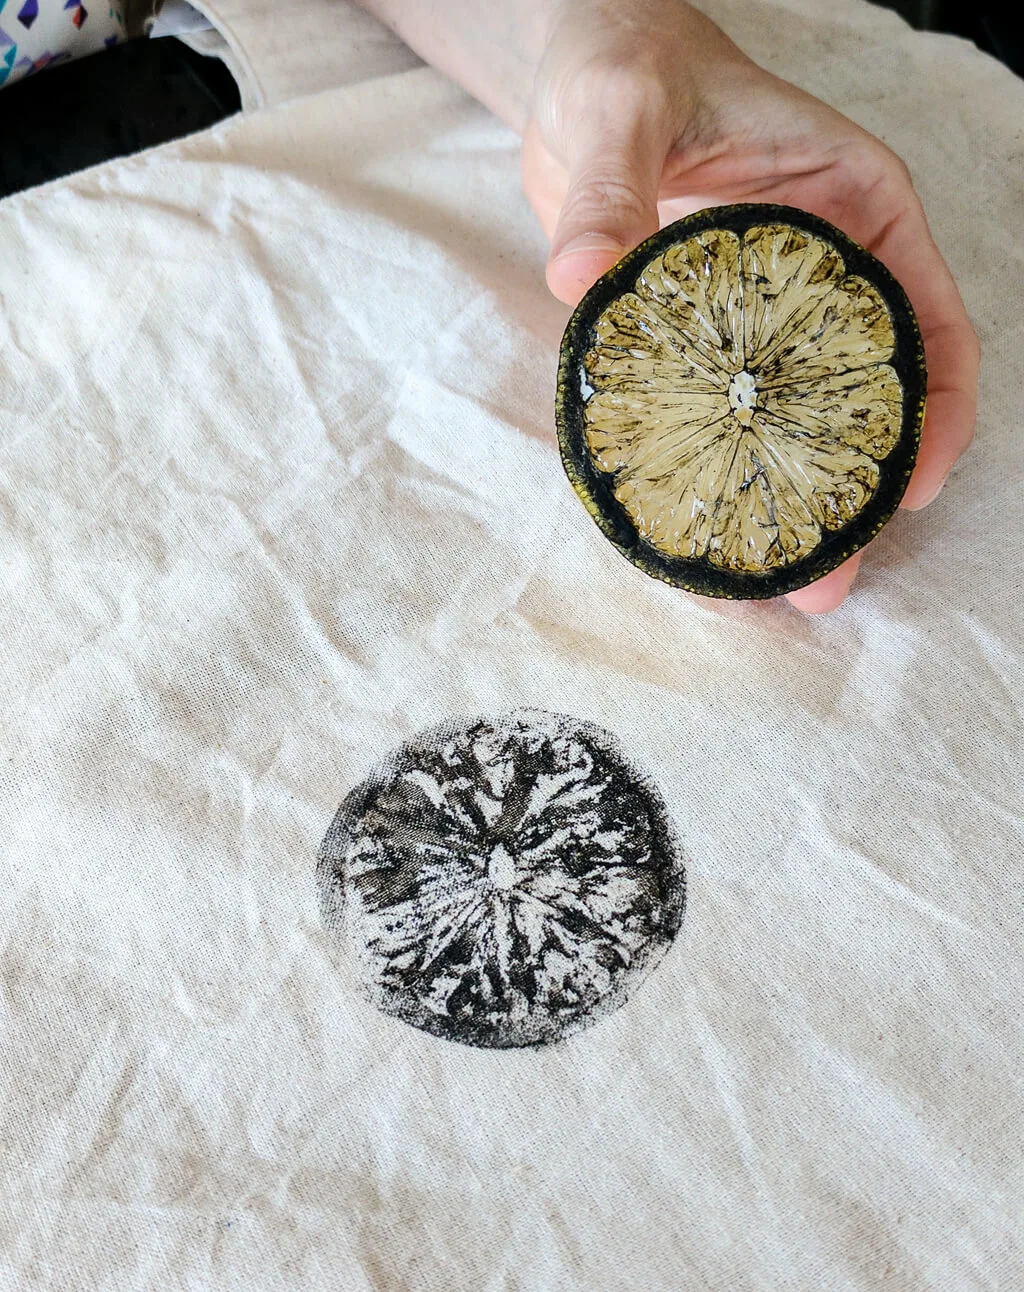 DIY fruit stamping with lemons